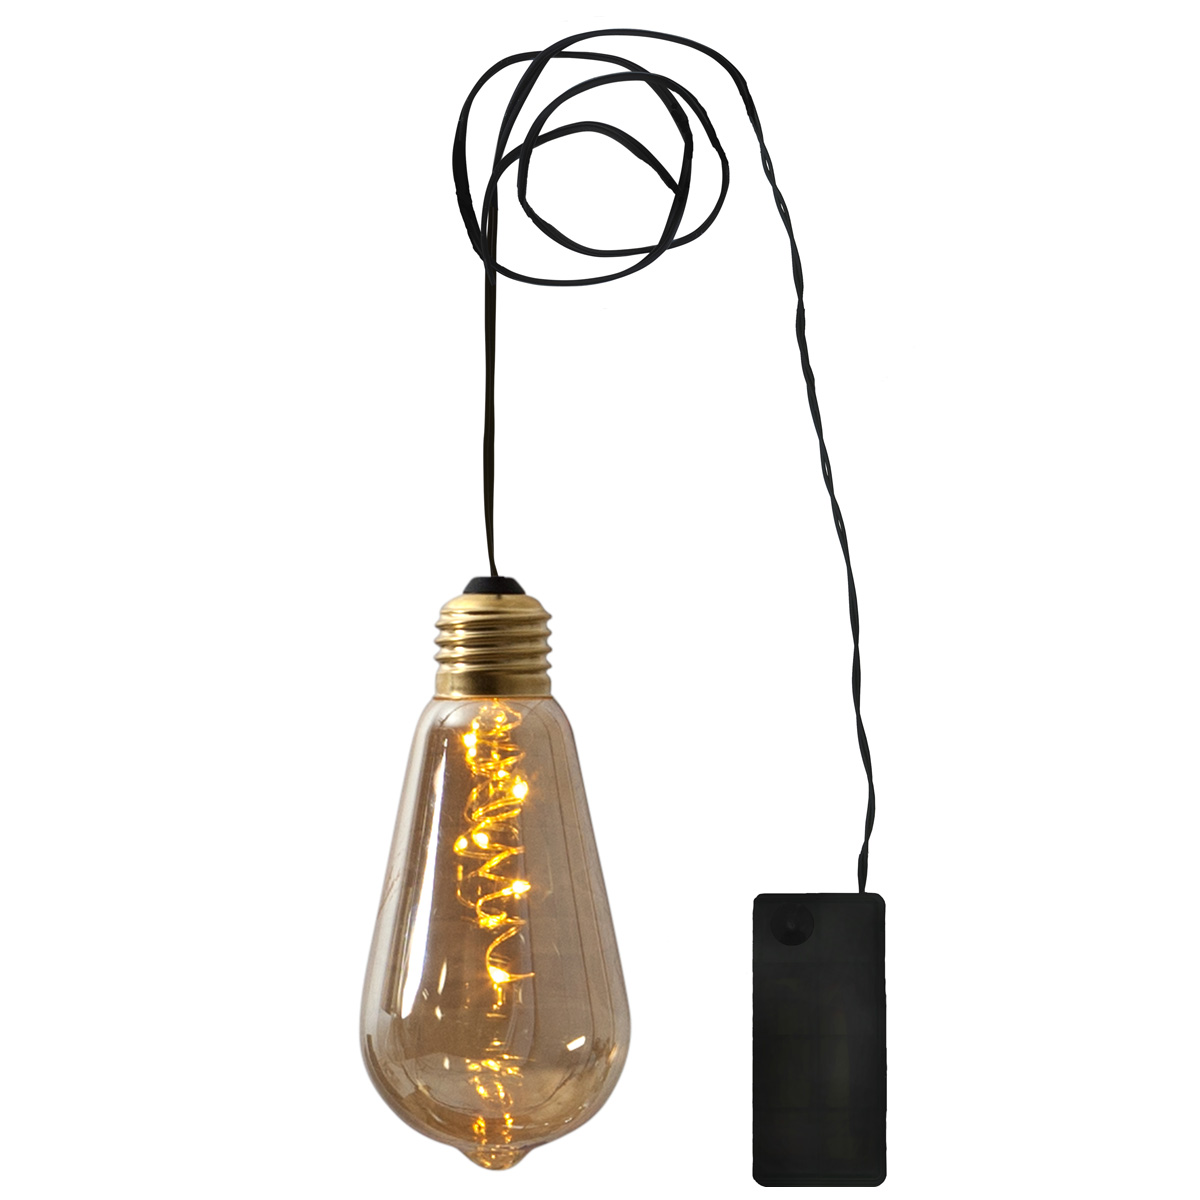 LED Dekoleuchte Glow - 5 warmweiße LED in amber Glühbirne - H: 13cm - D: 6cm - Batterie - Timer